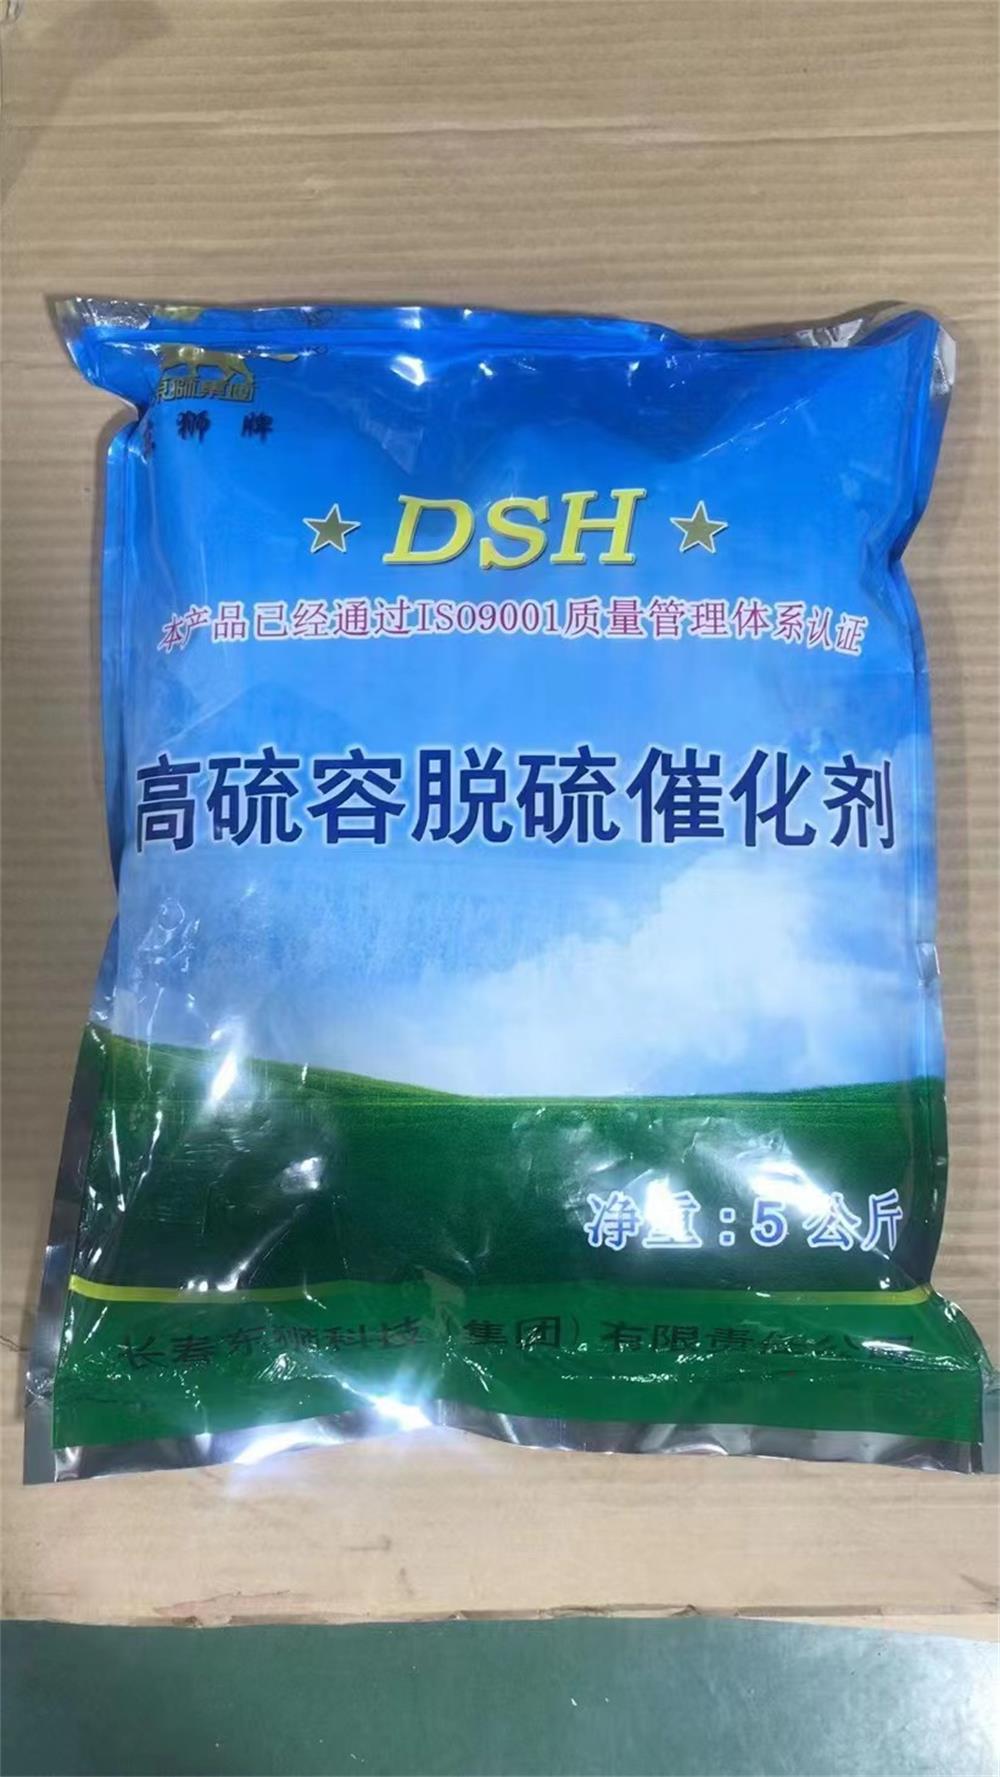 脱硫催化剂生产厂家 ​东狮牌脱硫催化剂 供应DSH高硫容脱硫催化剂